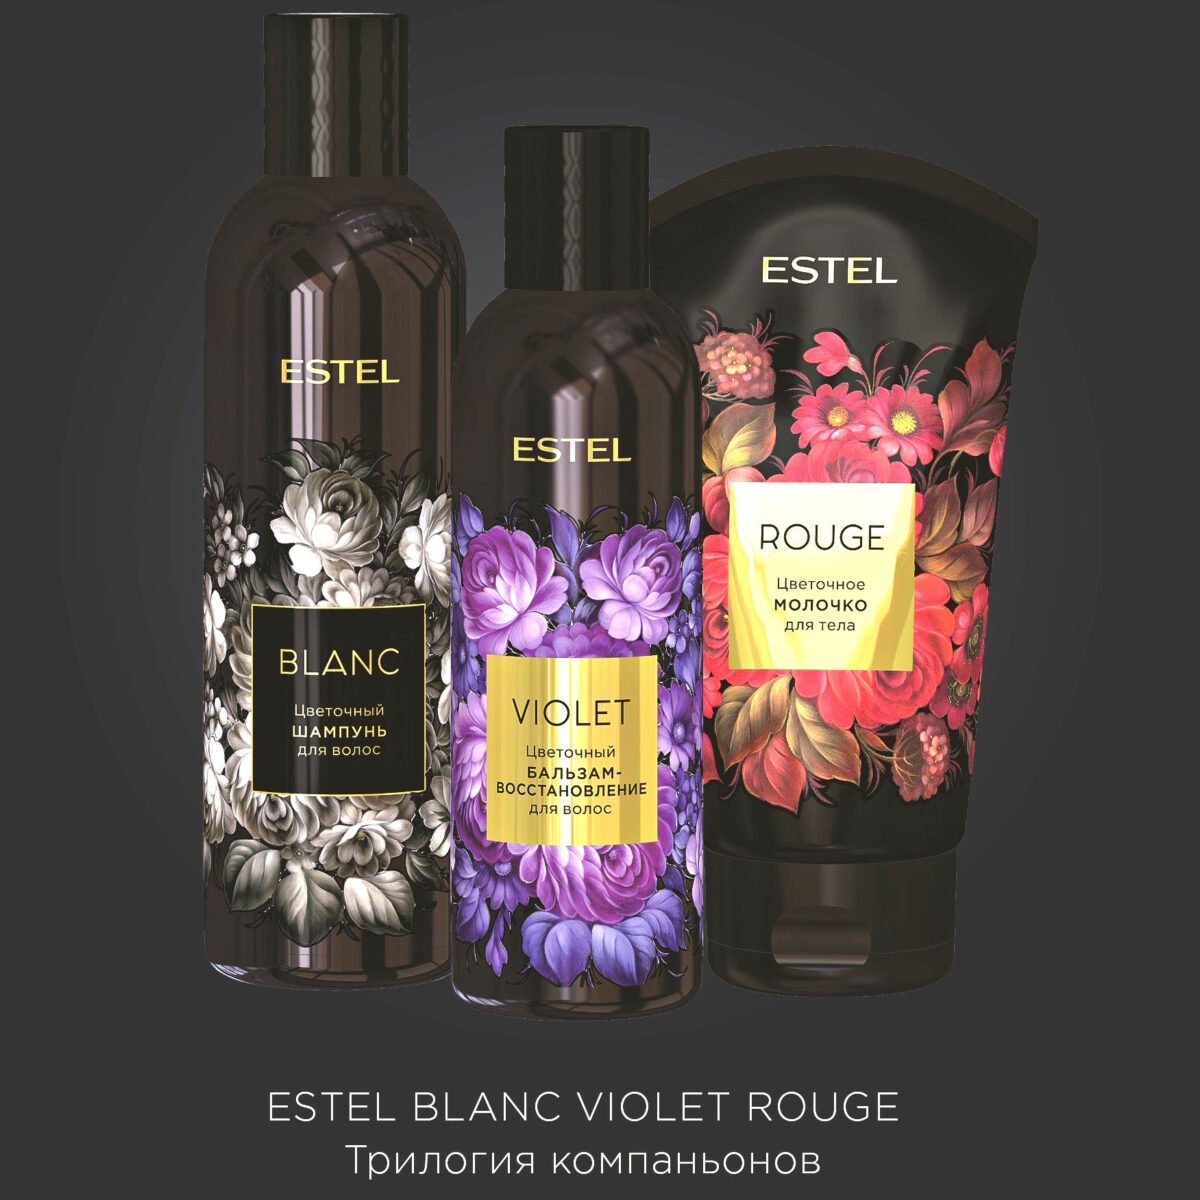 EF/BVRN, Цветочная трилогия ESTEL (Цветочный шампунь для волос ESTEL BLANC;Цветочный бальзам-восстановление для волос ESTEL VIOLET; Цветочное молочко для тела ESTEL ROUGE), Estel